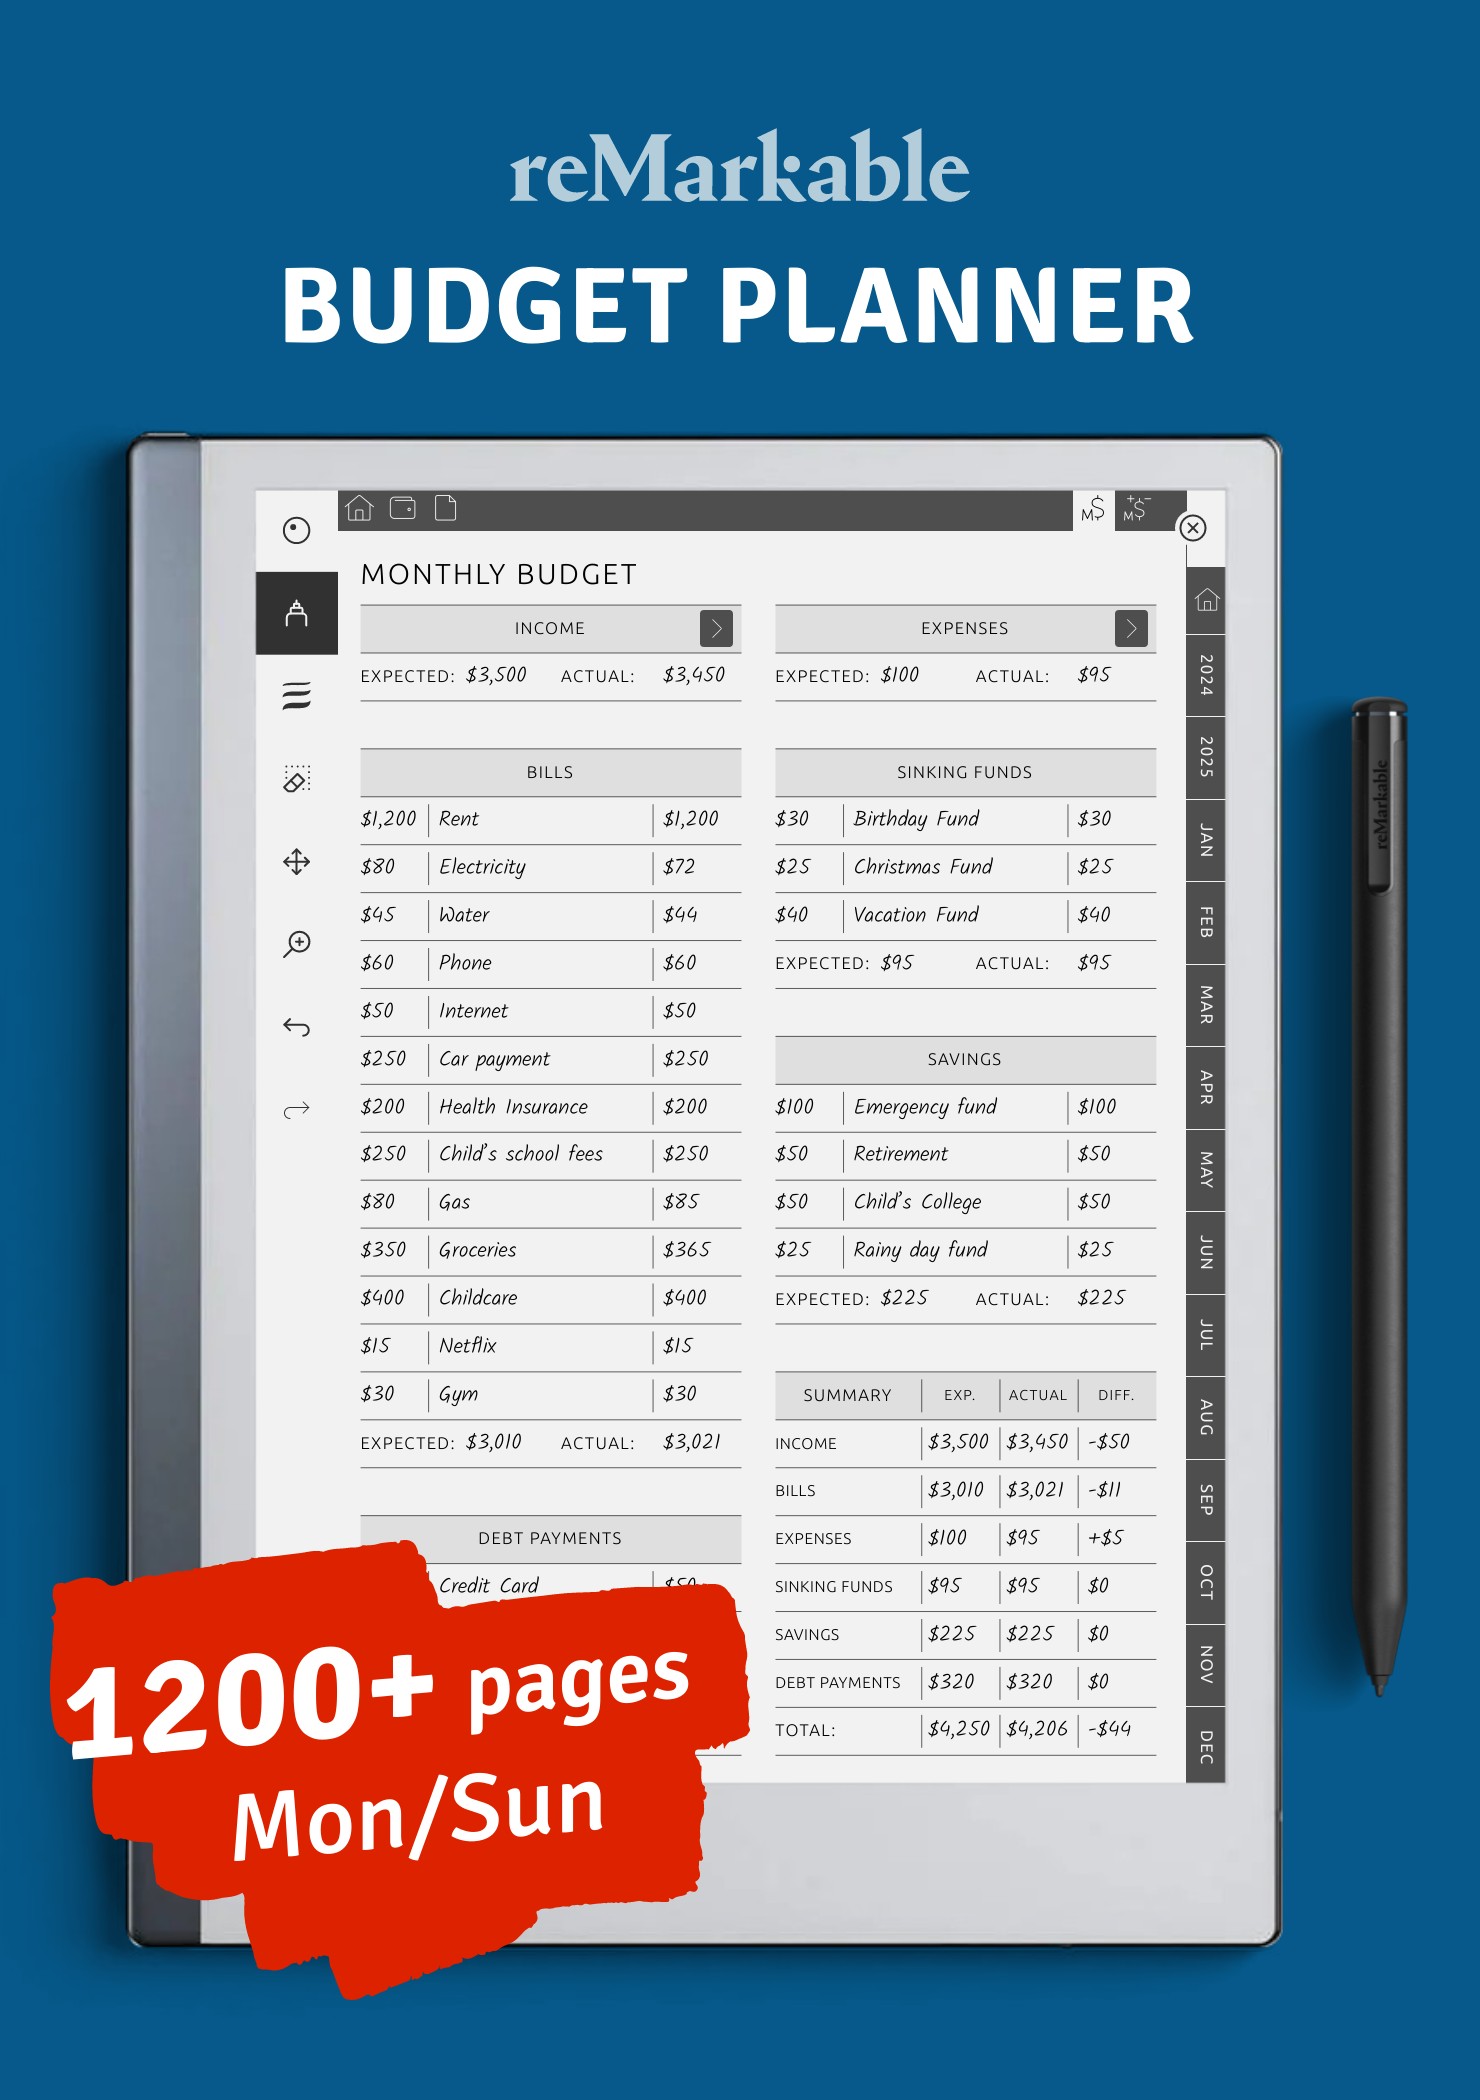 download-budget-planner-pdf-for-remarkable